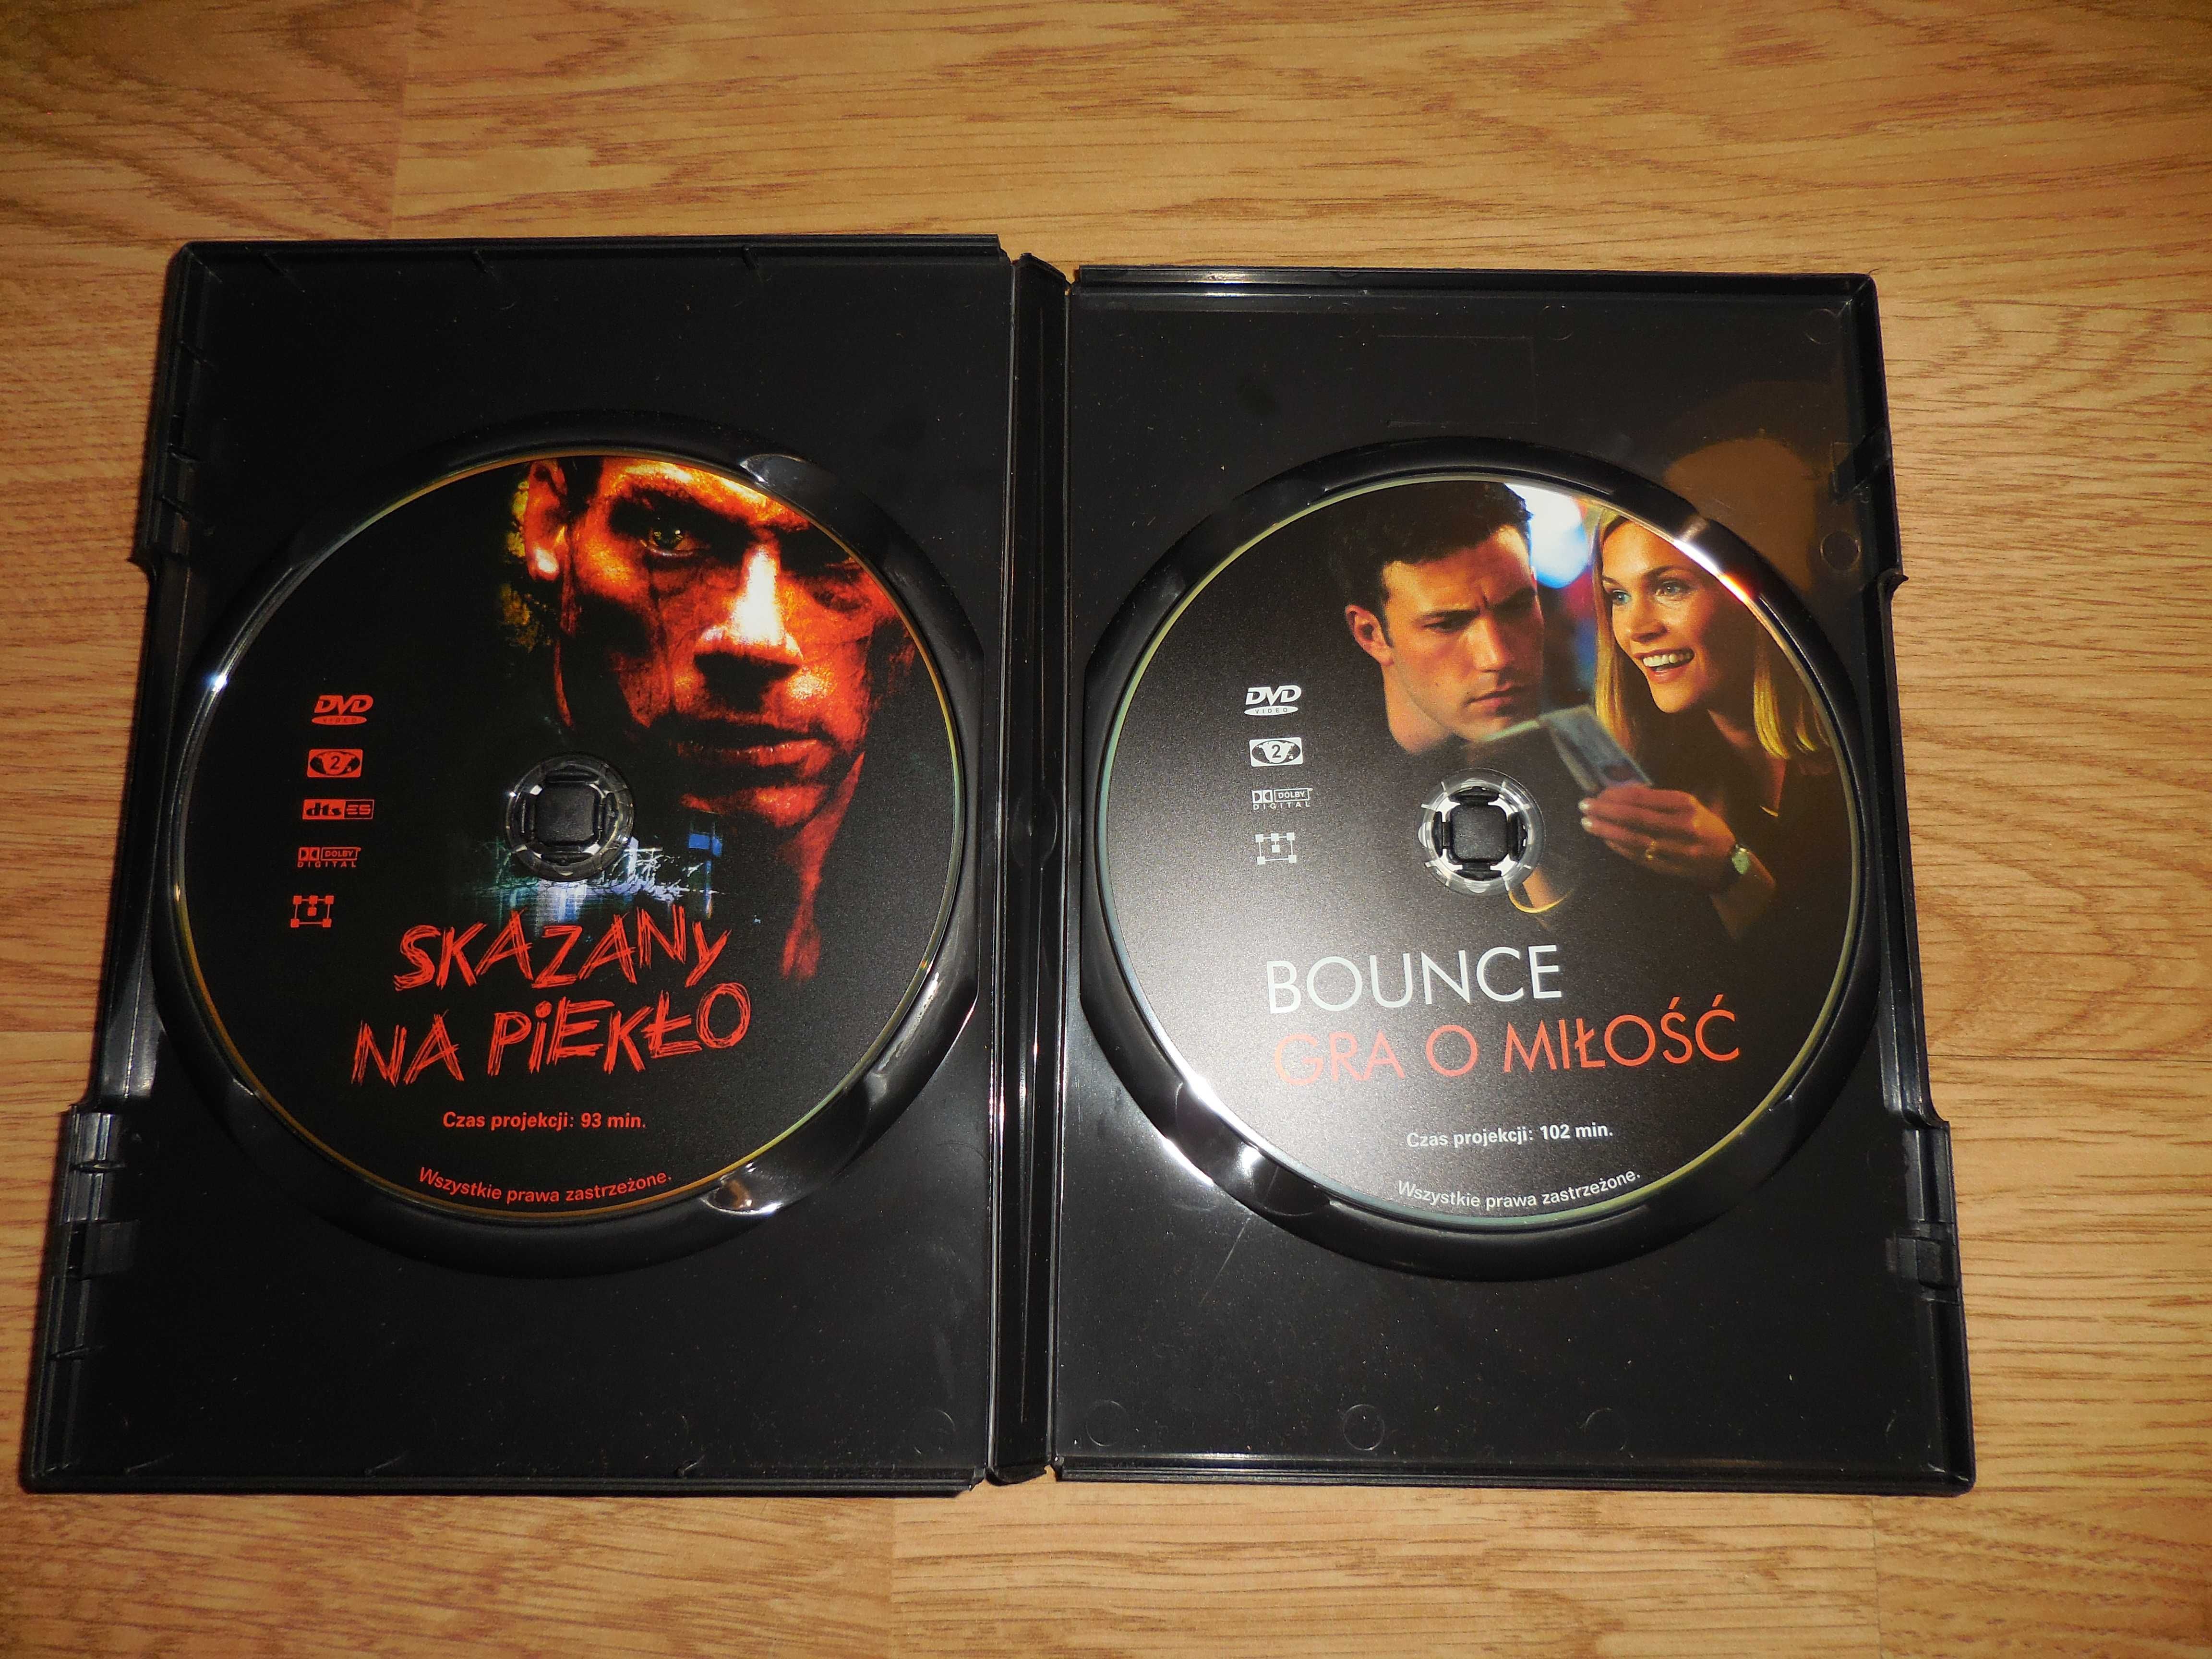 2 FILMY DVD 'Skazany na piekło -- Bounce gra o miłość